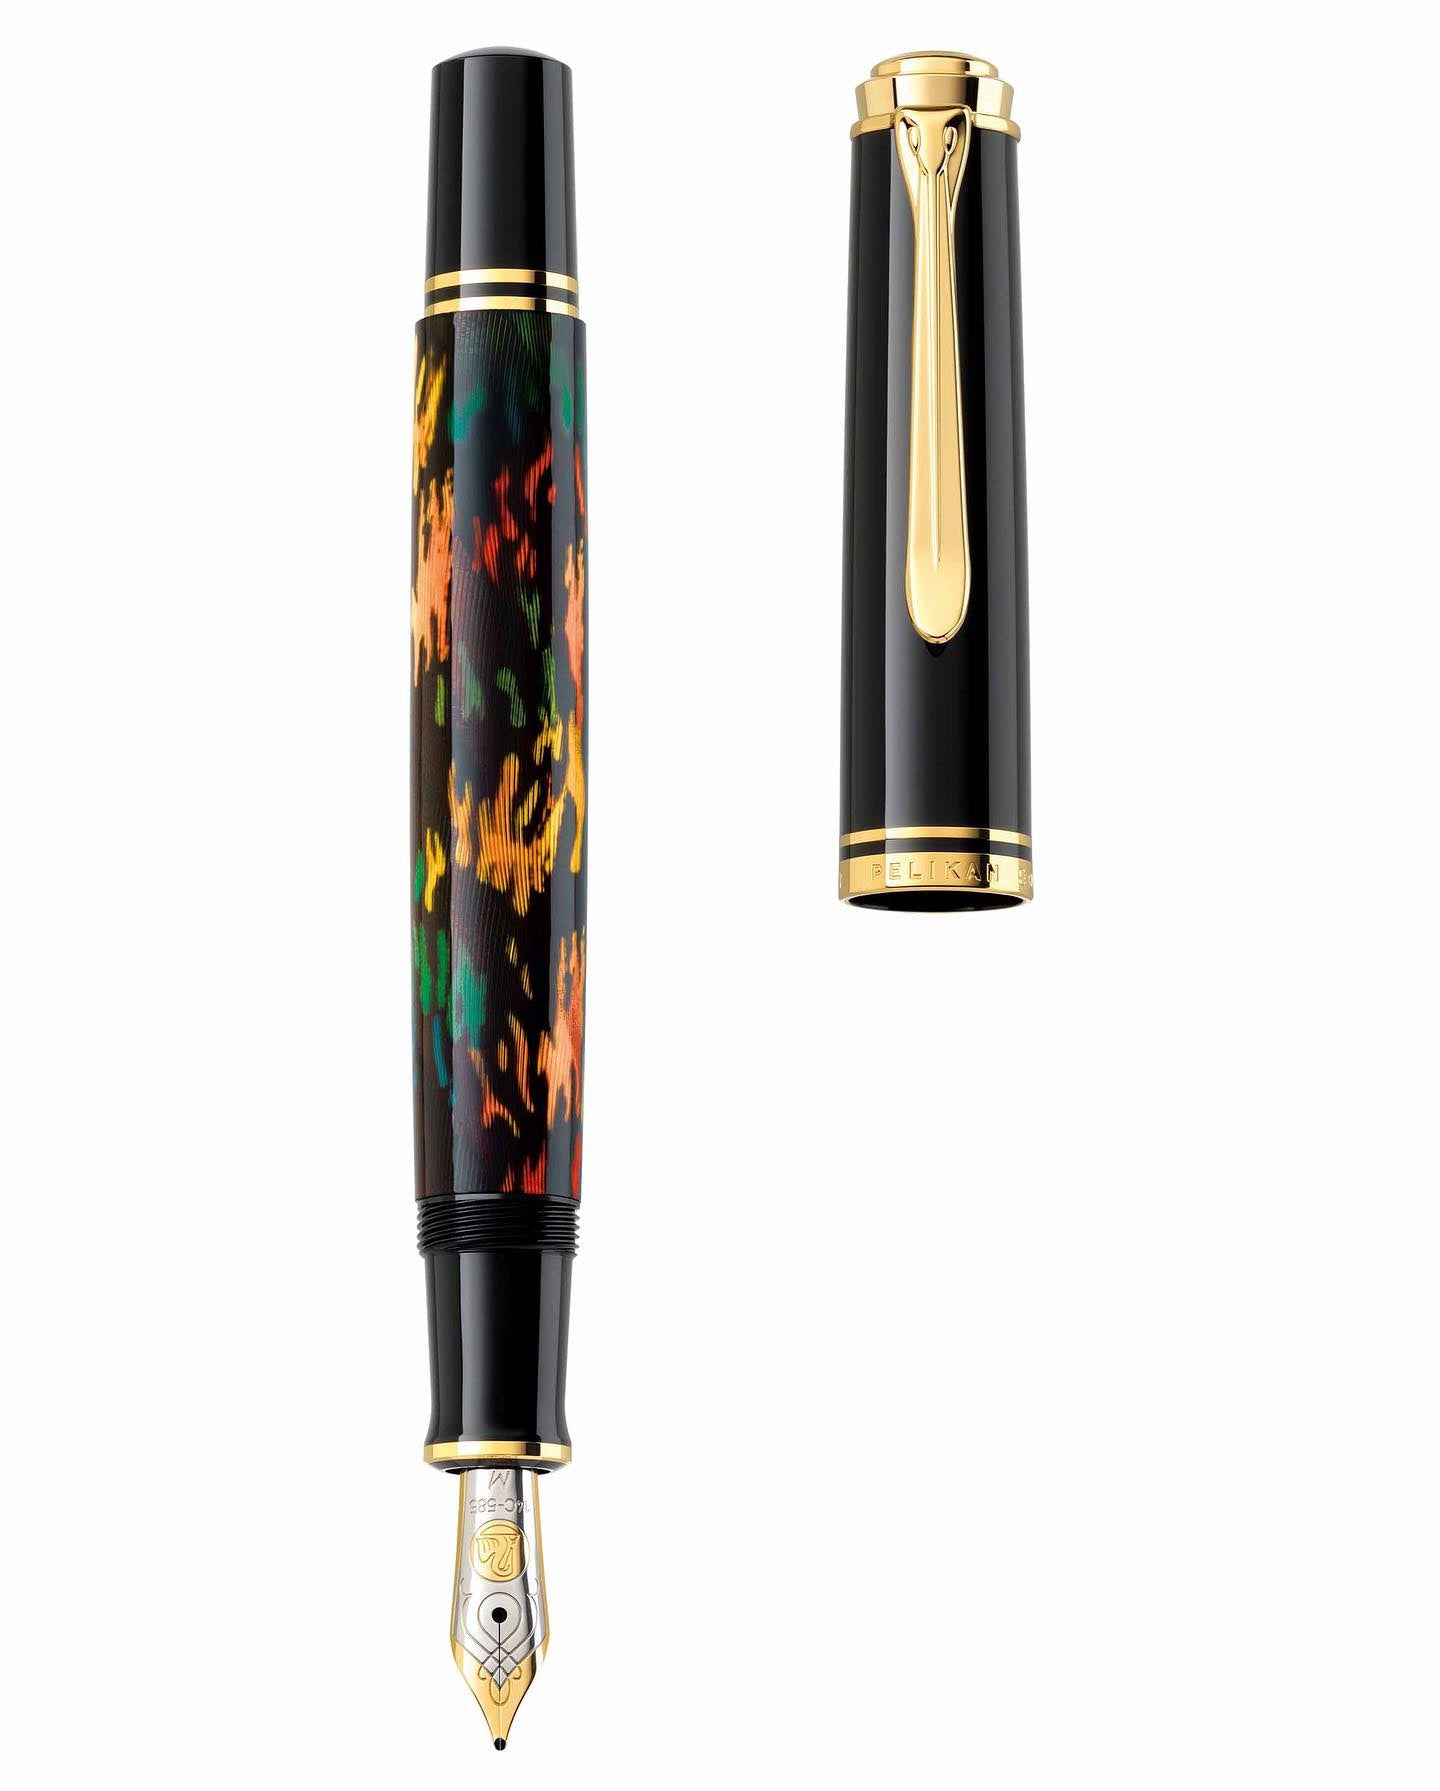 Pelikan Souveran M600 Art Collection Glauco Cambon Fountain Pen - Pencraft the boutique